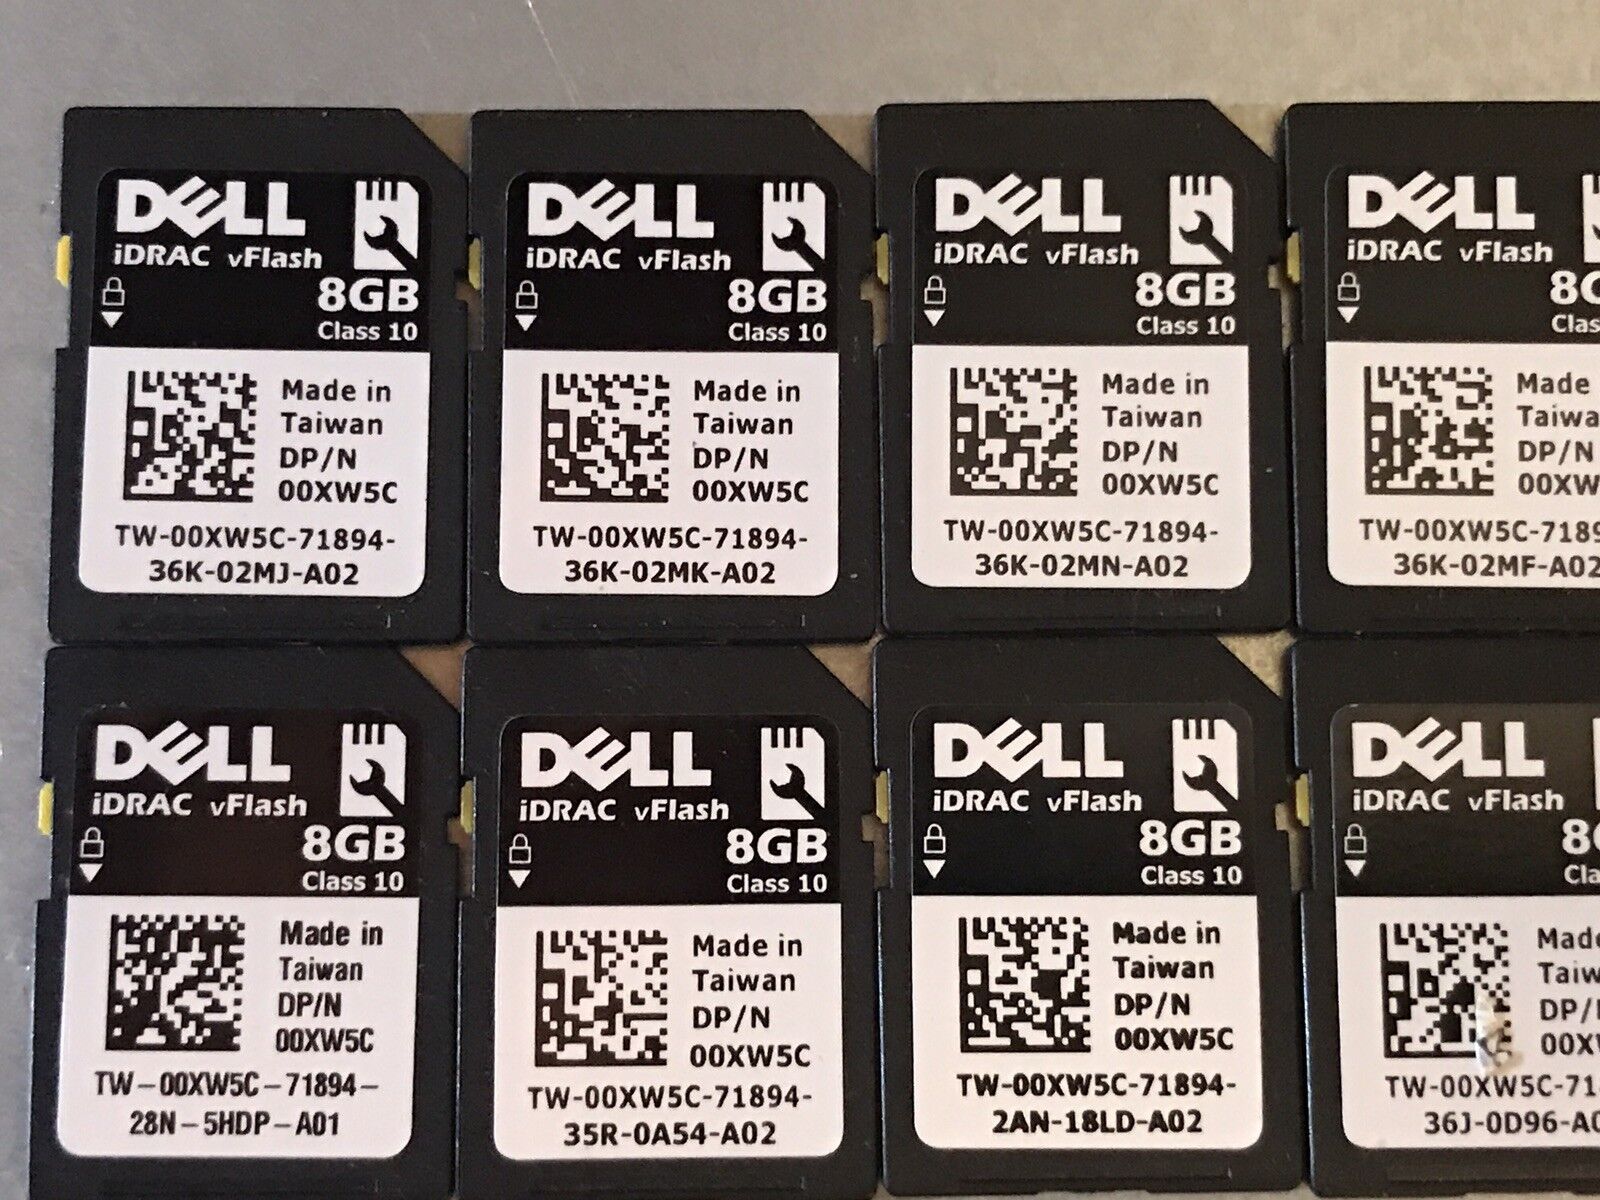 Dell iDRAC vFlash 8GB 0XW5C SD Card IDSDM iDRAC7 iDRAC8 iDRAC6.